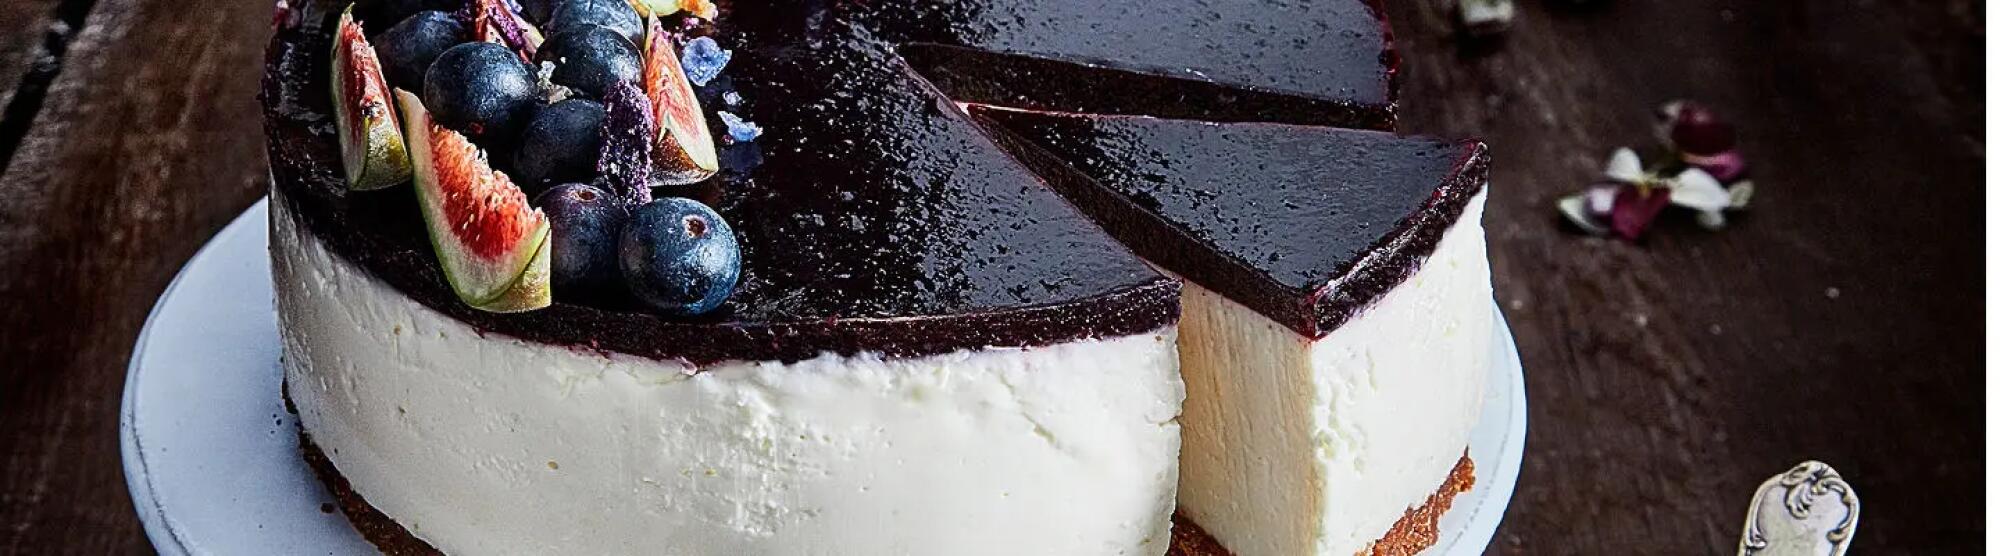 Recette : Cheesecake au fromage frais, myrtilles et figues